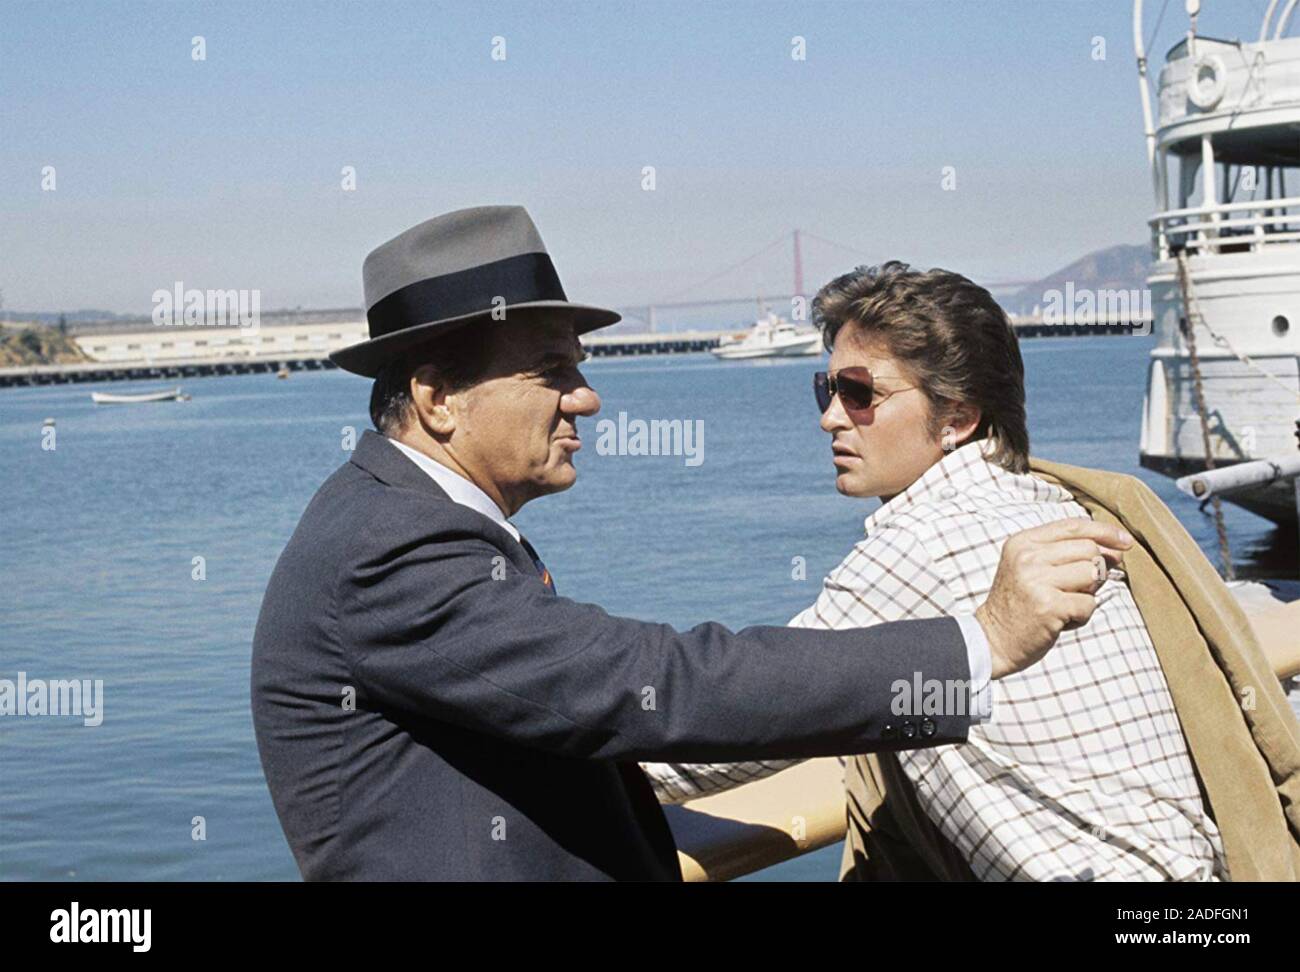 Les RUES DE SAN FRANCISCO ABC TV series 1972-1977 avec Karl Malden et Michael Douglas Banque D'Images